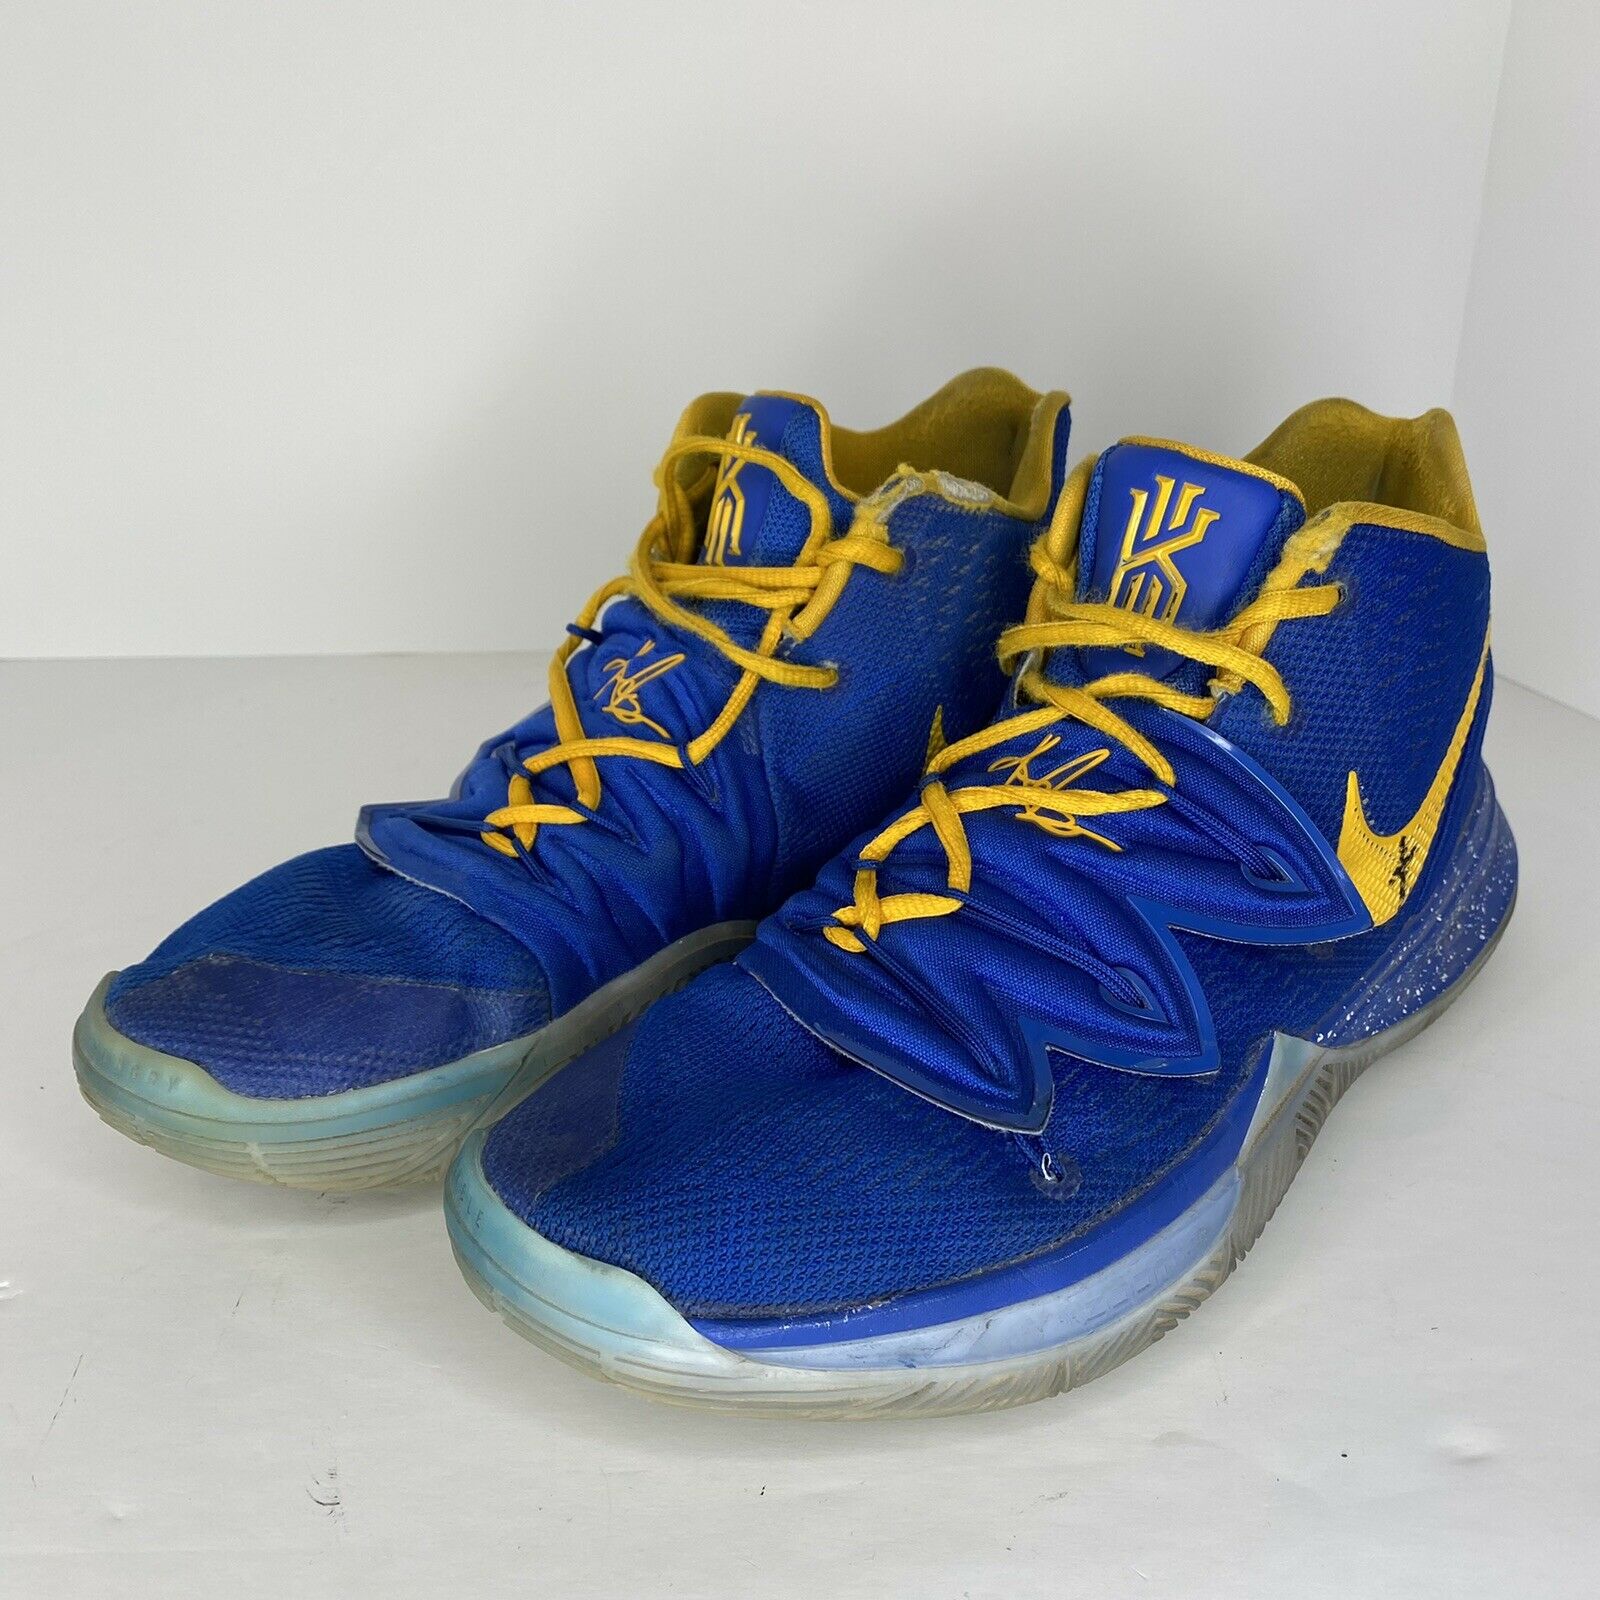 Nike Kyrie 5 iD AV7917-991 Men's Basketball Shoes Custom Blue/Gold Size 9.5